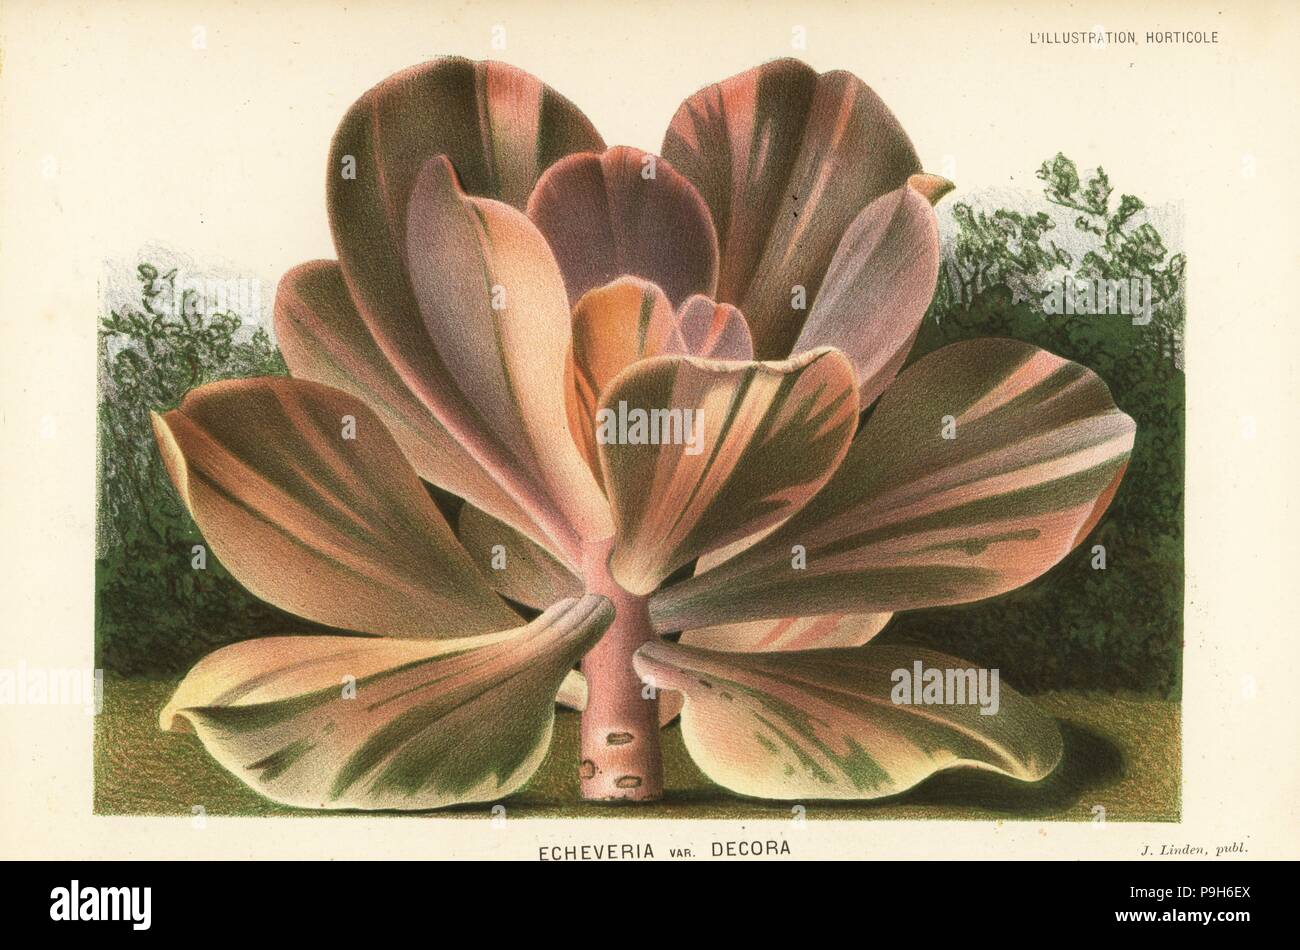 Echeveria Gibbiflora (Echeveria Metallica var Decora). Farblitho von P. de Pannemaeker von Jean Linden l ' Illustration Horticole, Brüssel, 1883. Stockfoto